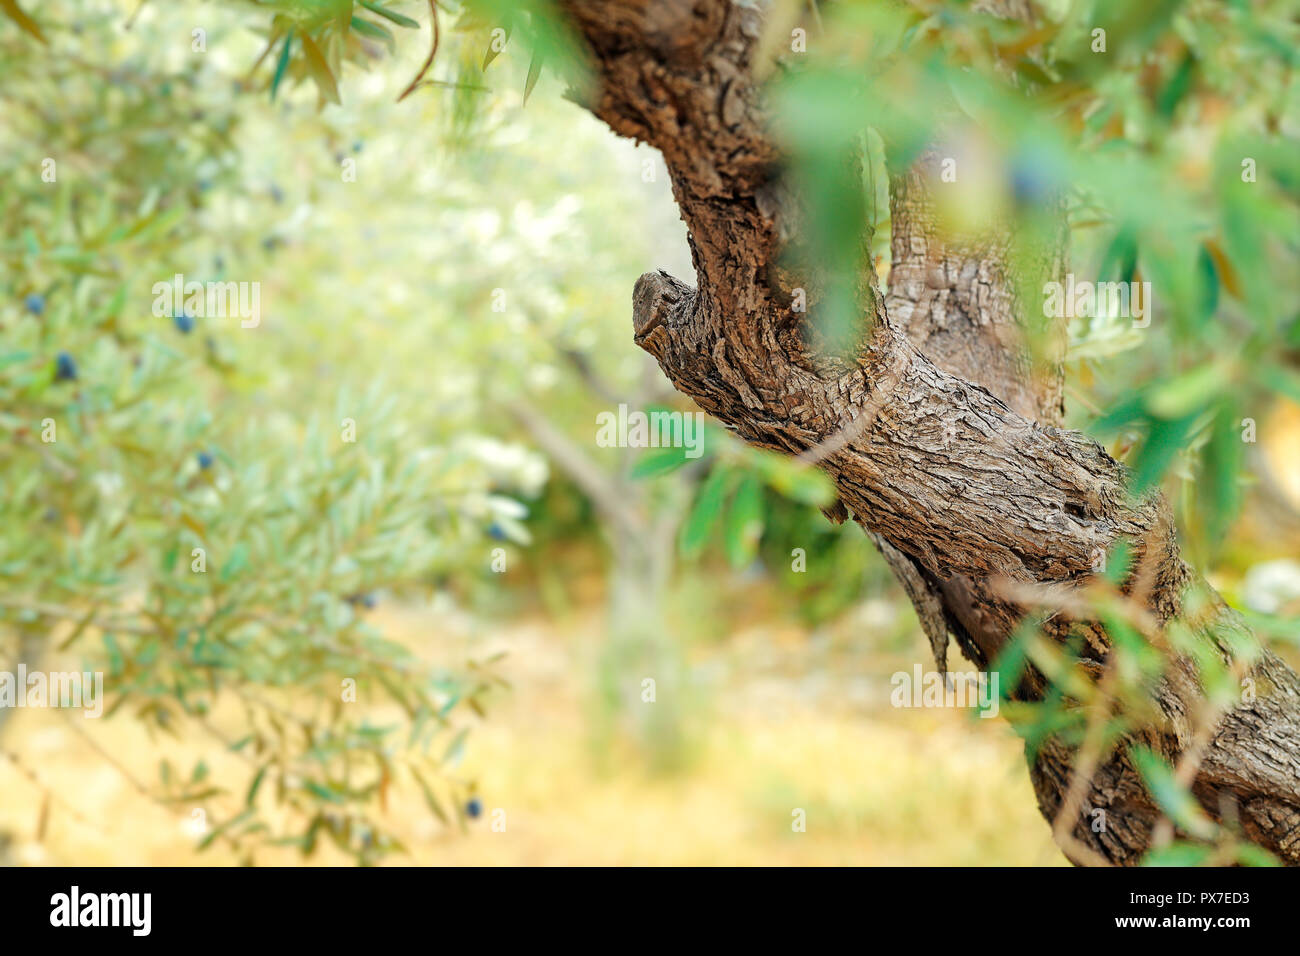 Oliven Baum Garten, Herbst Erntezeit, gesunde organische Ernährung, traditionelle mediterrane Früchte, Landwirtschaft und Anbau Konzept Stockfoto